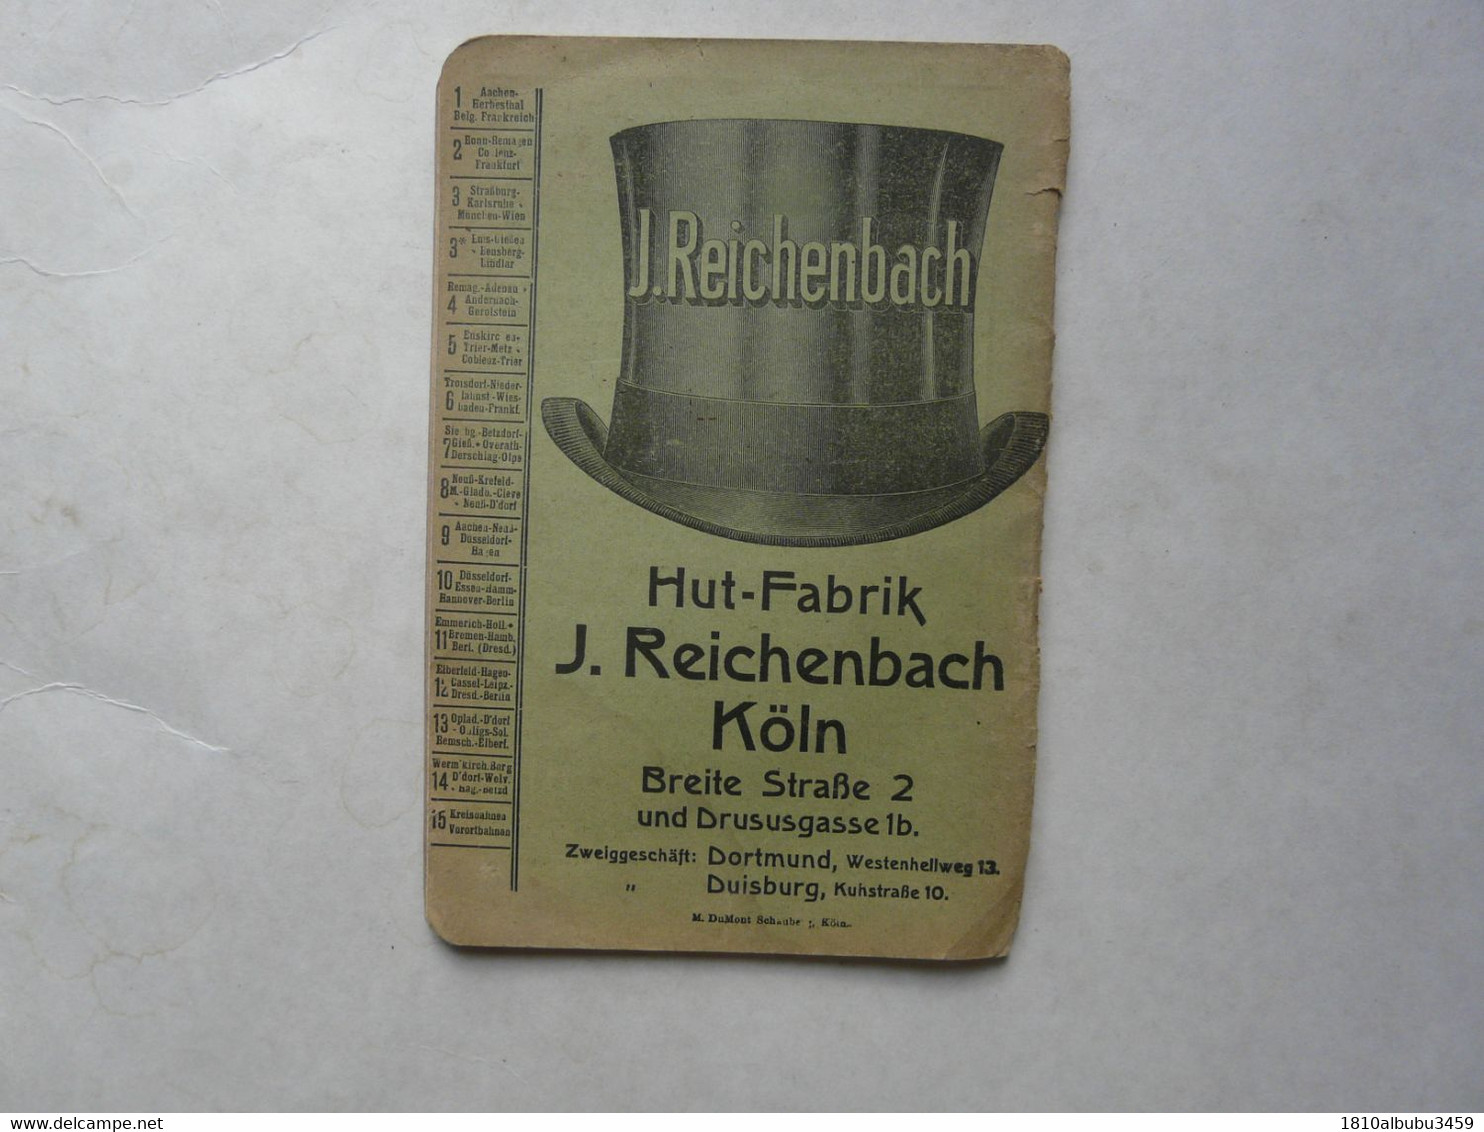 FAHRPLAN M. DUMONT SCHAUBERG 1920-1921 - Germania